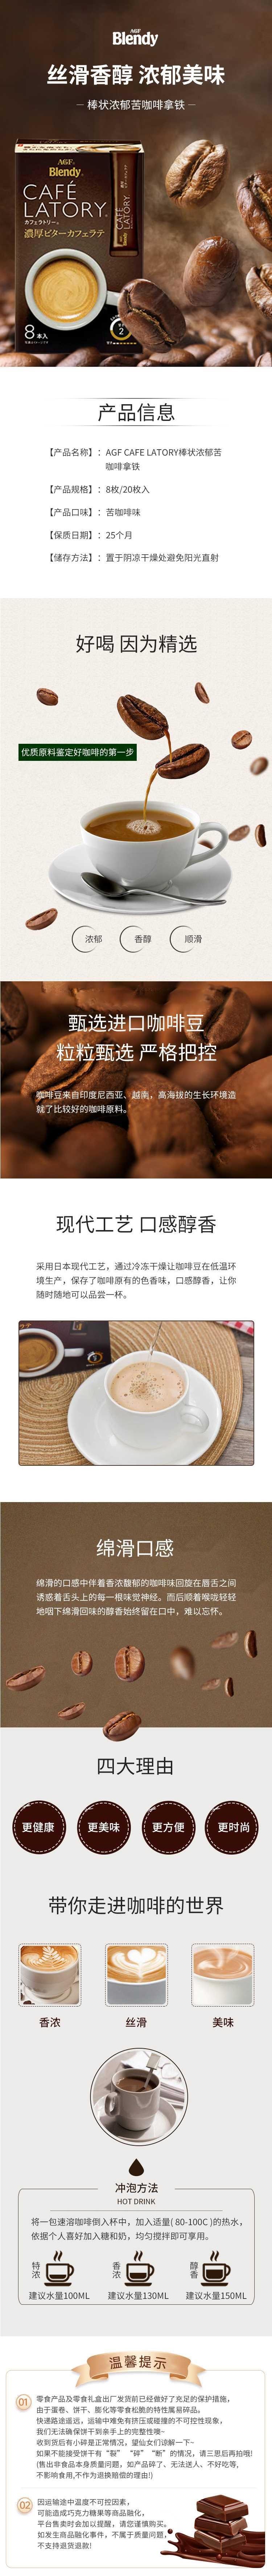 【日本直效郵件】AGF CAFE LATORY 醇厚微苦拿鐵咖啡 20條入